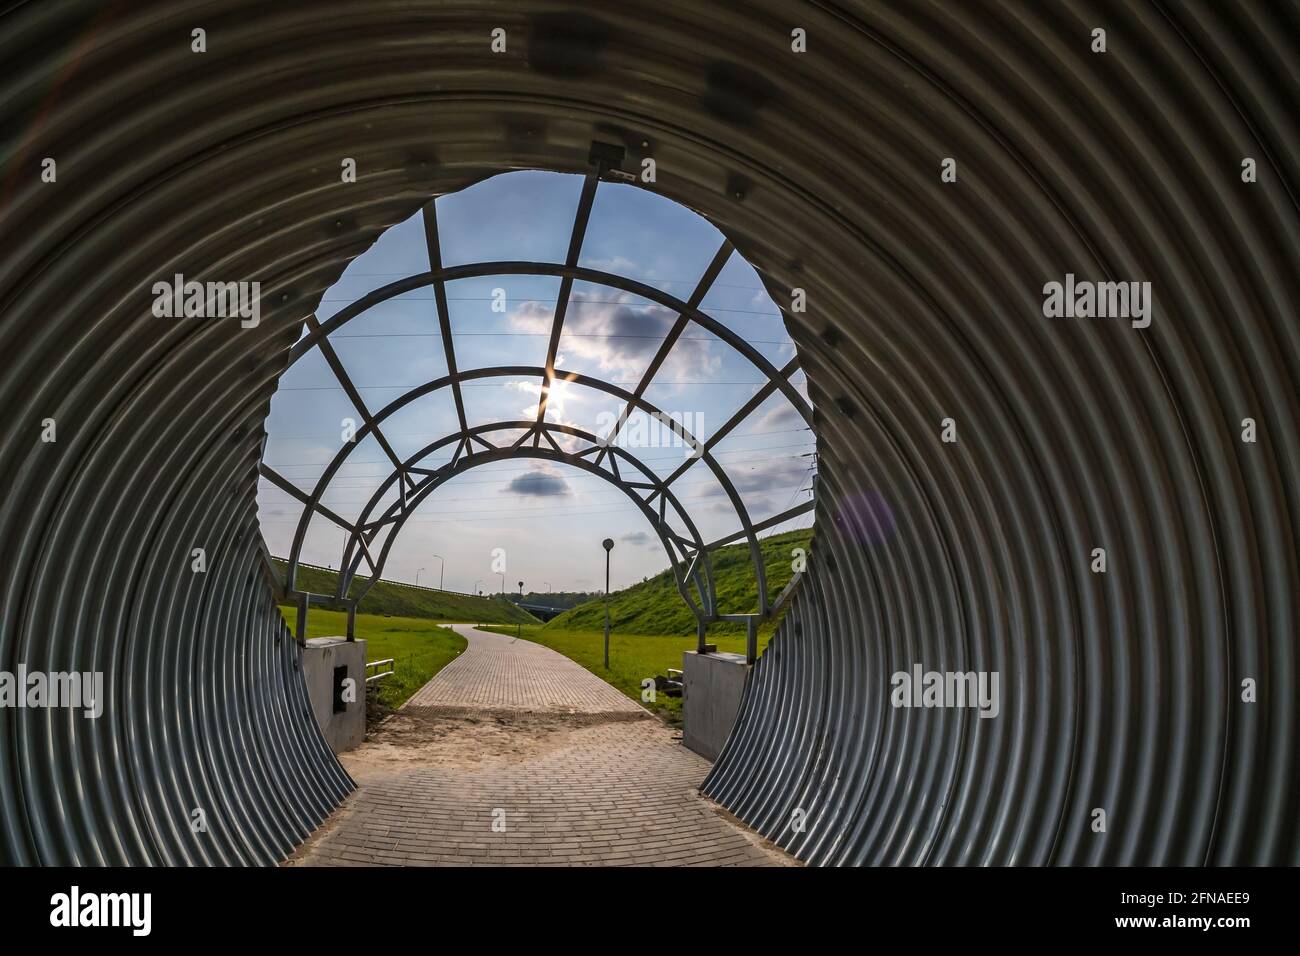 sentier de tunnel rond sur fond bleu ciel Banque D'Images